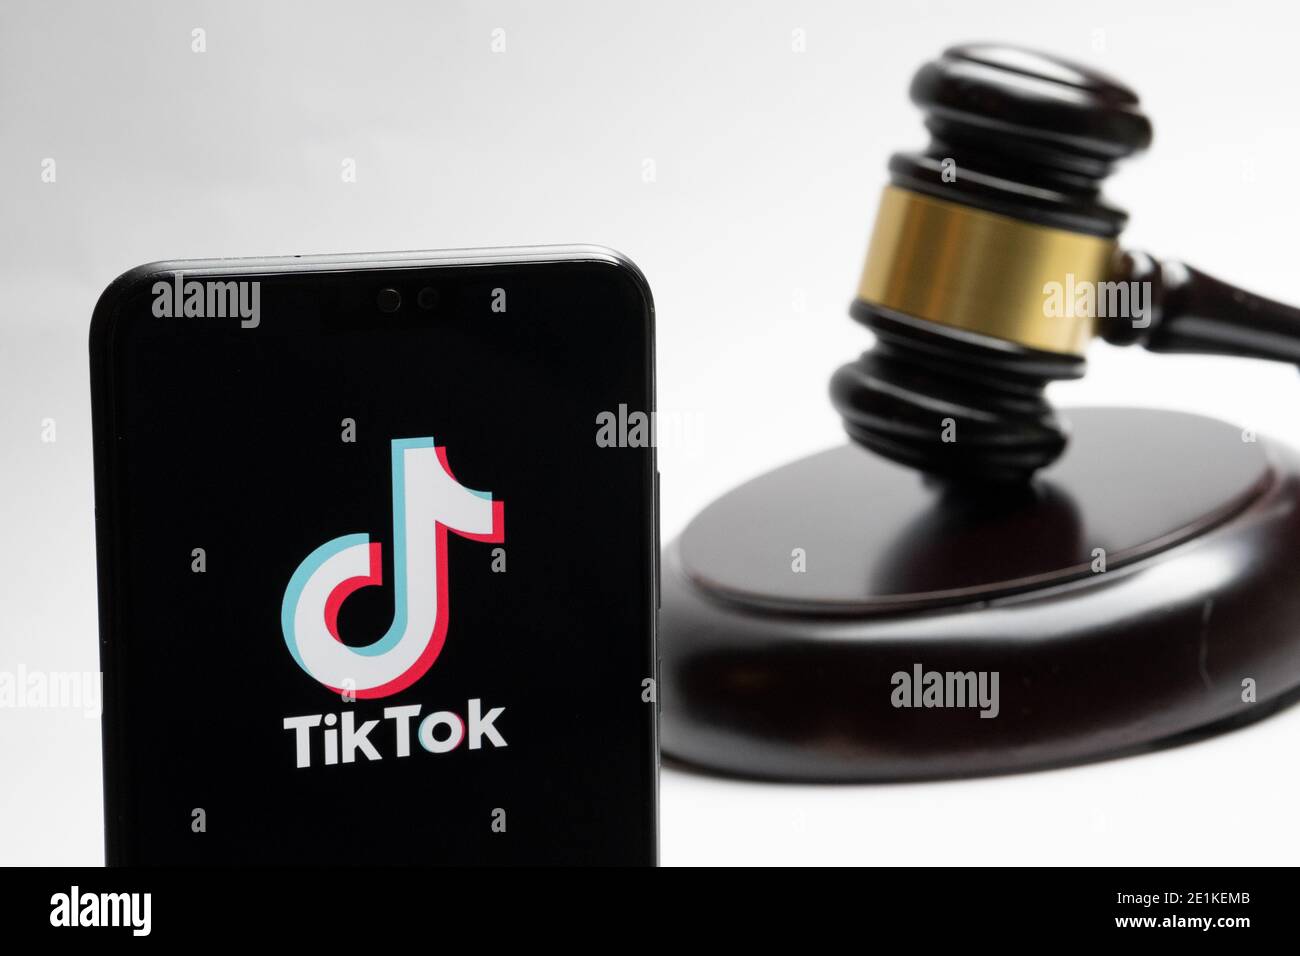 Stafford, Regno Unito - 7 gennaio 2021: Il logo TikTok visto sullo smartphone e un giudice gavel offuscato sullo sfondo. Concetto. Foto Stock